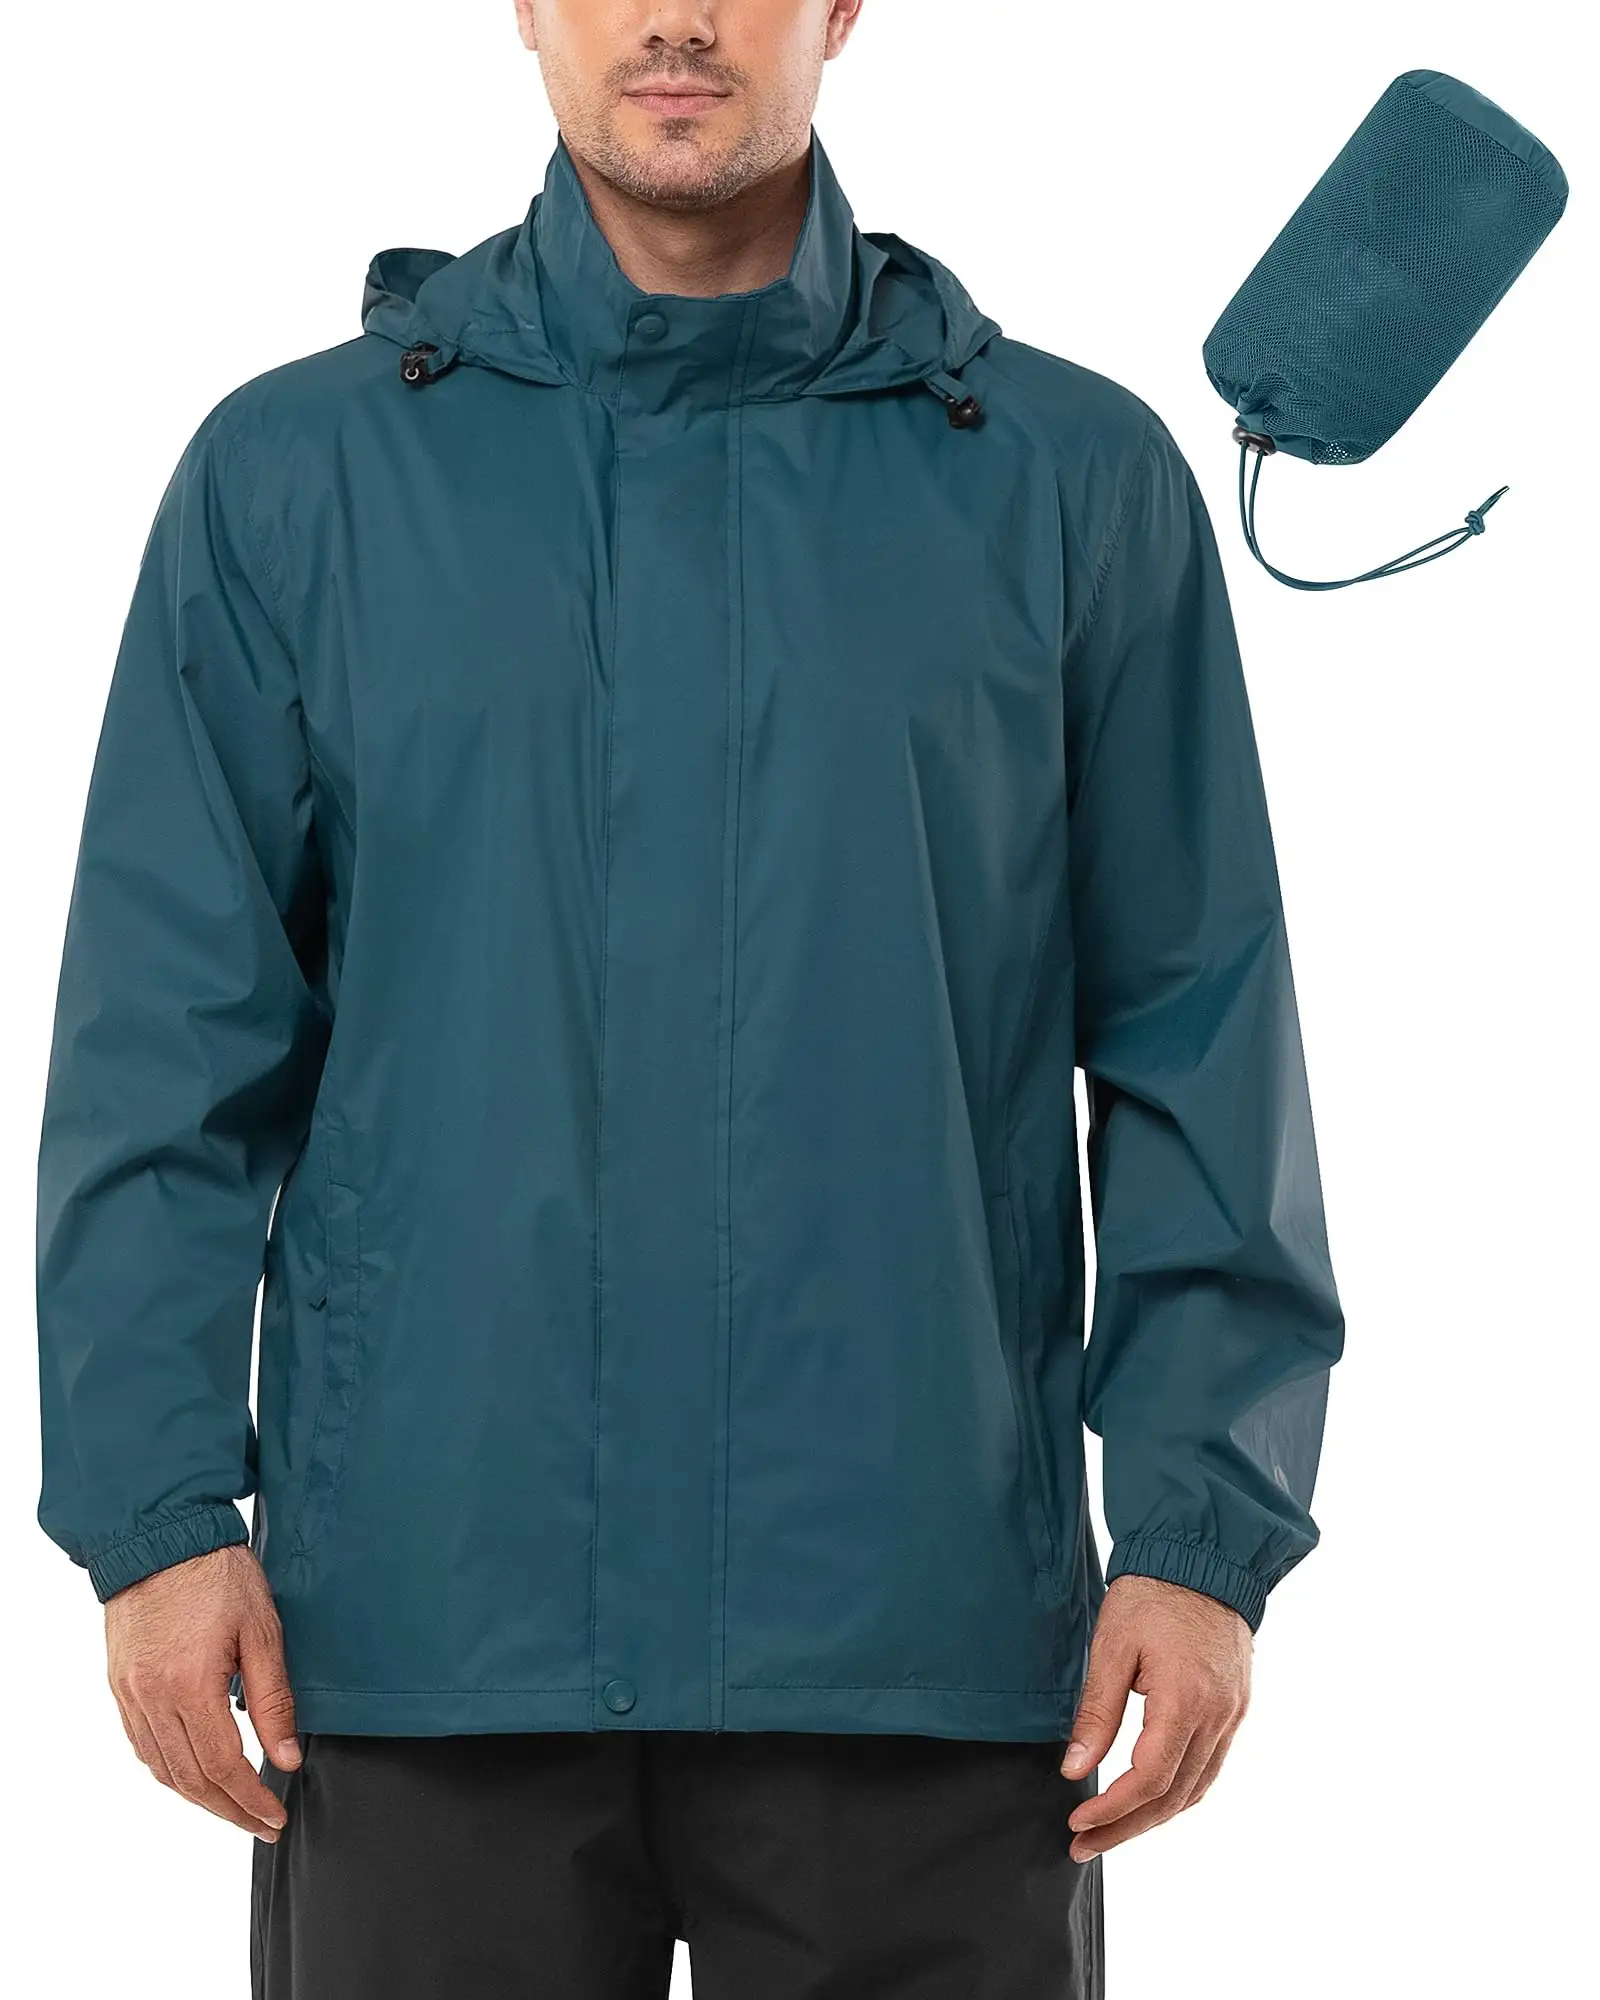 メンズアウトドア防水ソフトシェルフード付き快適ジャケットは、カジュアルウェアハイキングキャンプに特に適しています